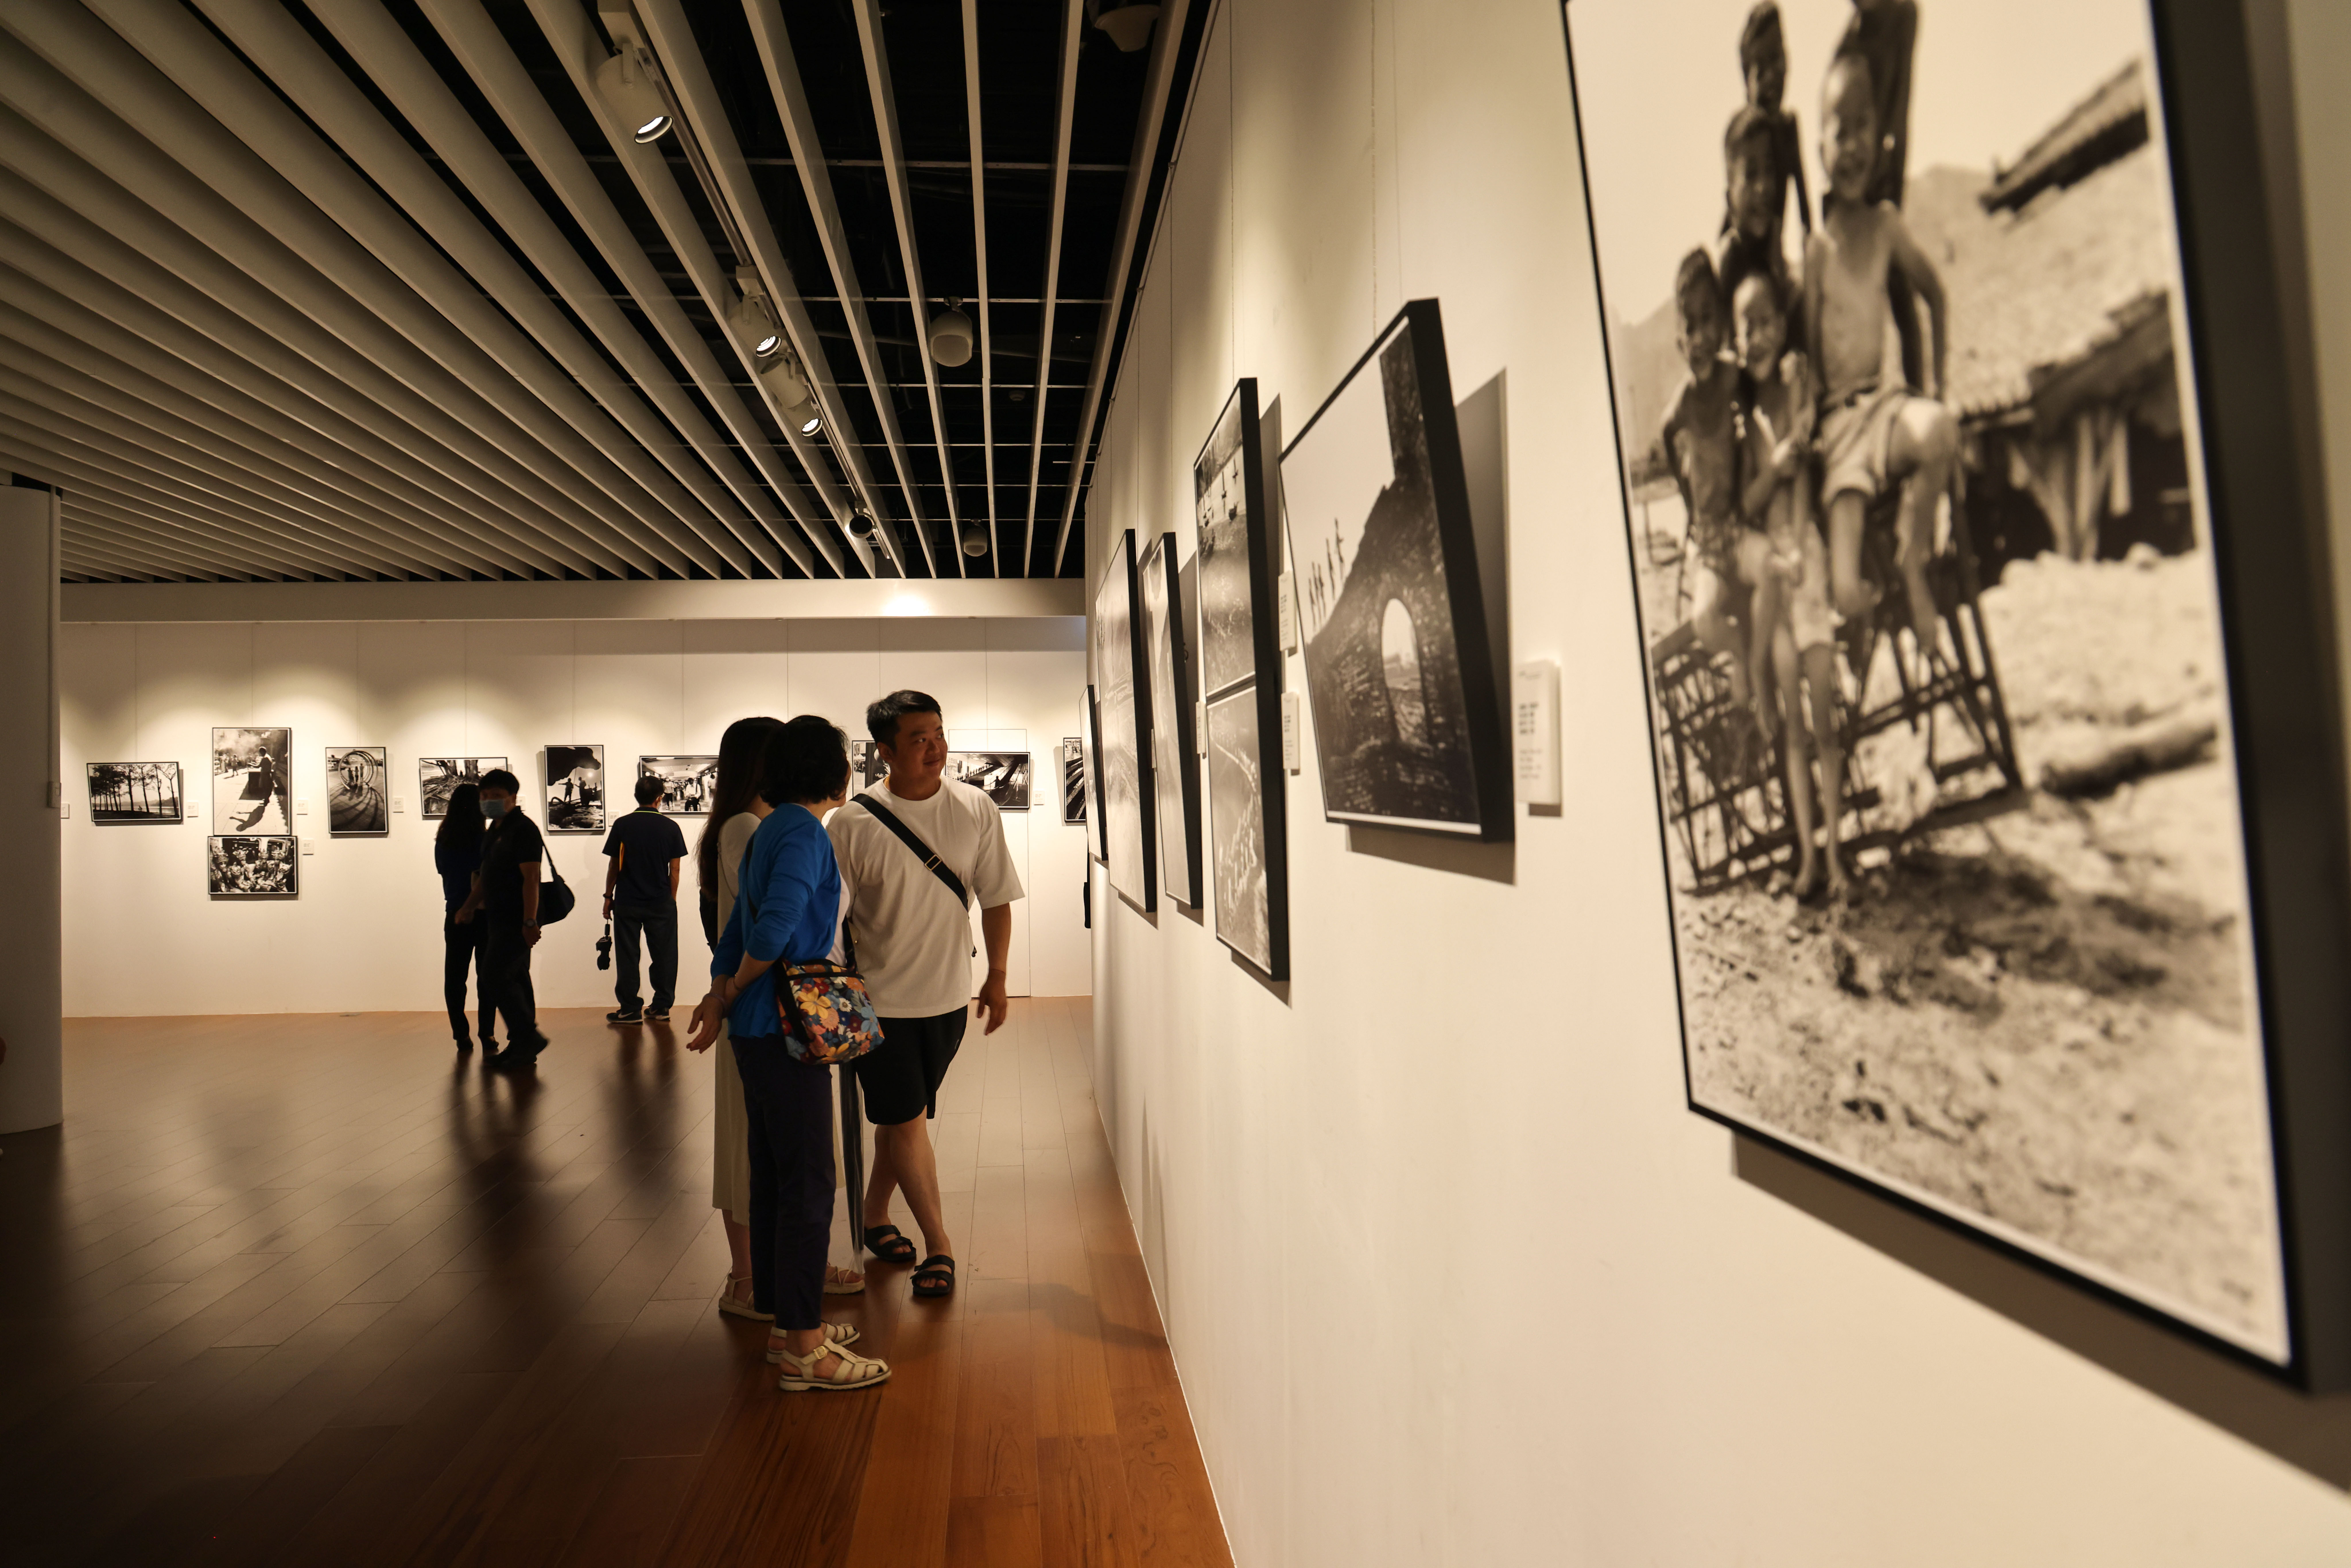 魅力永恆的瞬間—翁庭華90攝影個展於本館博愛藝廊展出，9月02日舉行開幕式。 112.09.02